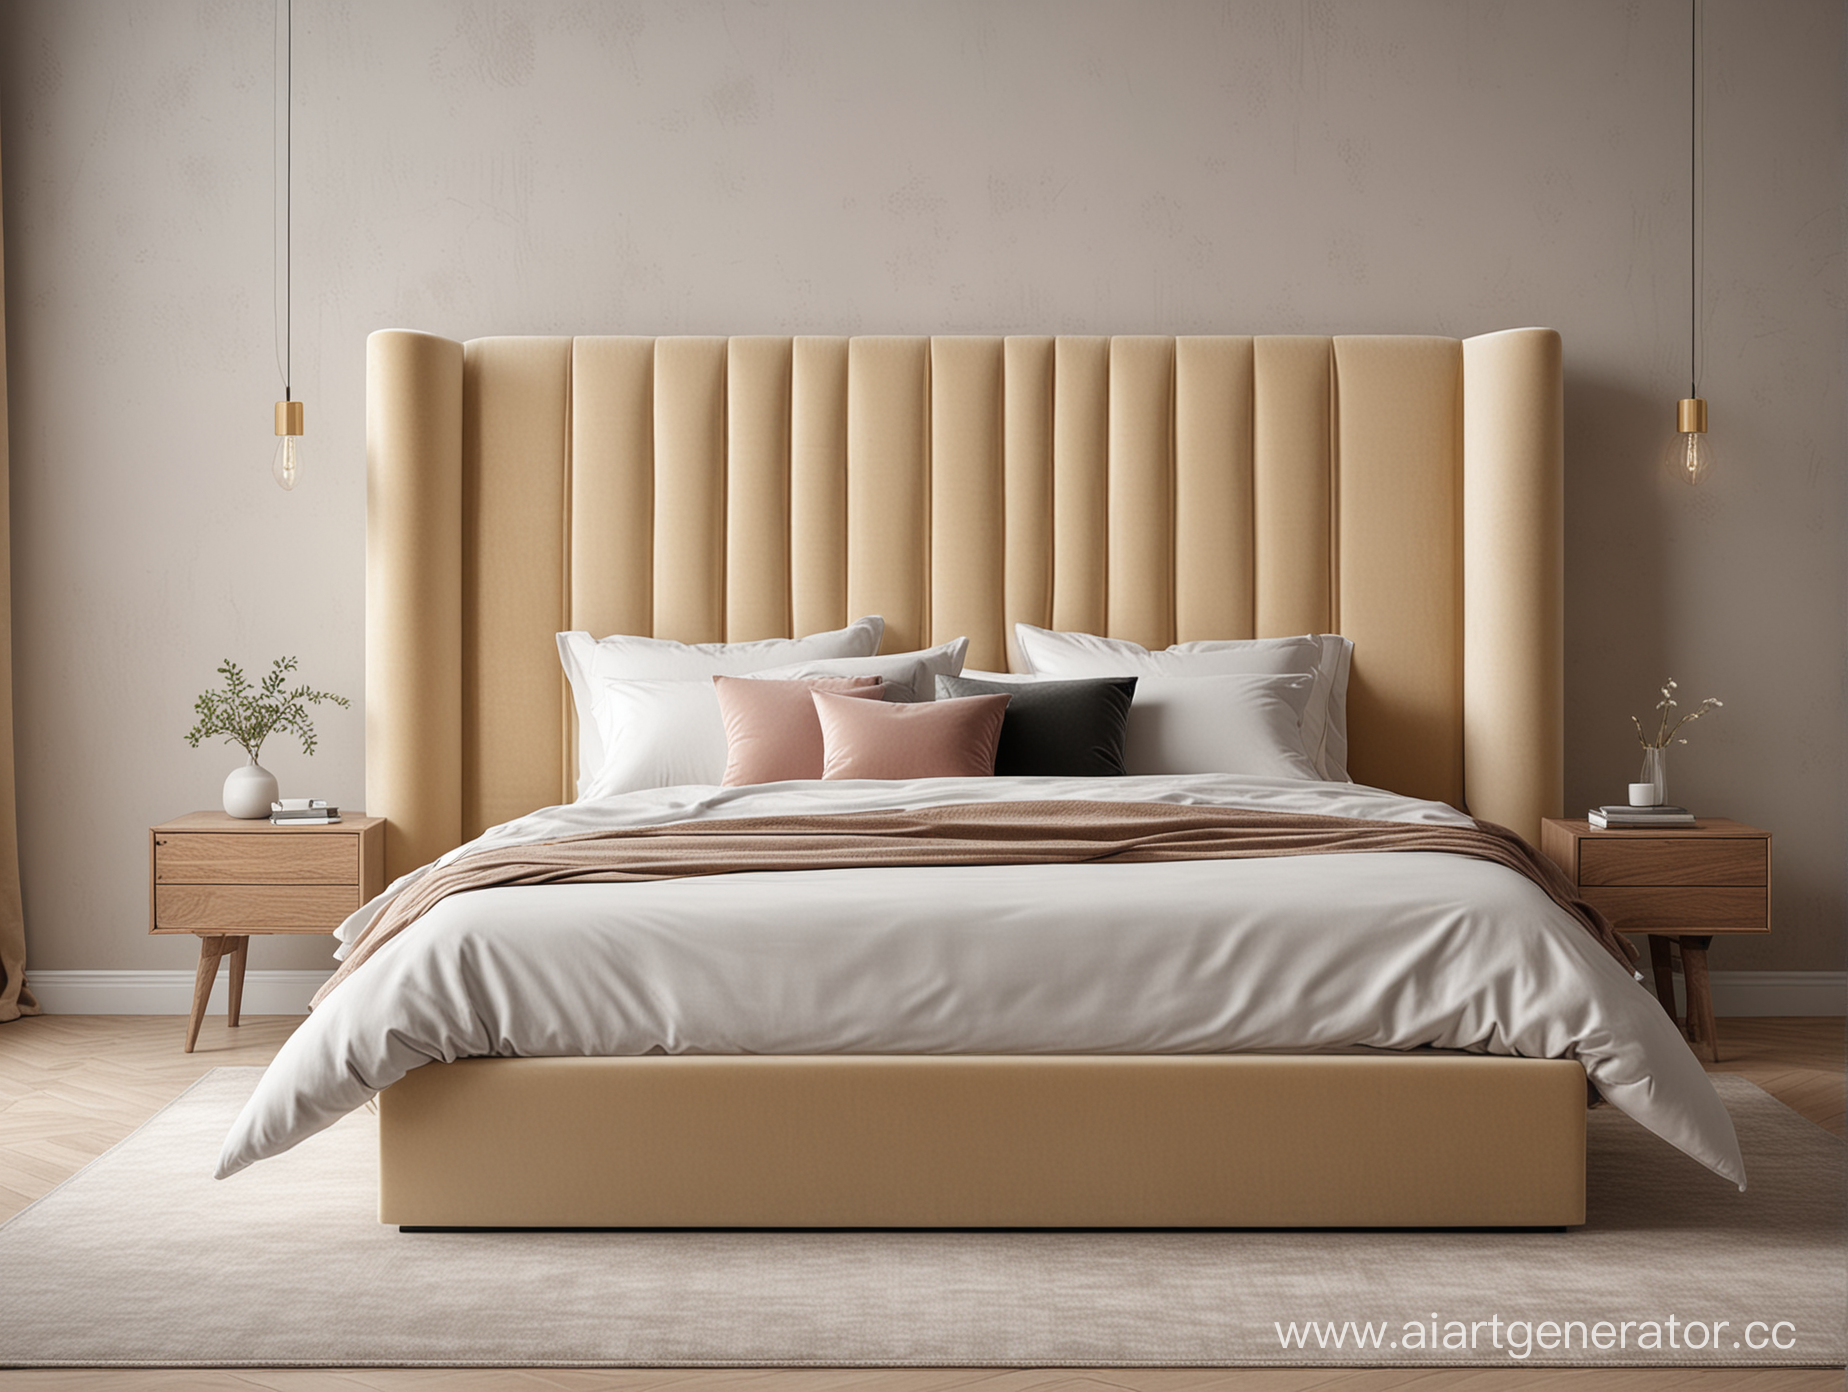 изображение современного минималистичного интерьера спальни с кроватью,изготовленной под заказ.  кровать обтянута мебельной тканью велюр бежевый, вид сбоку
